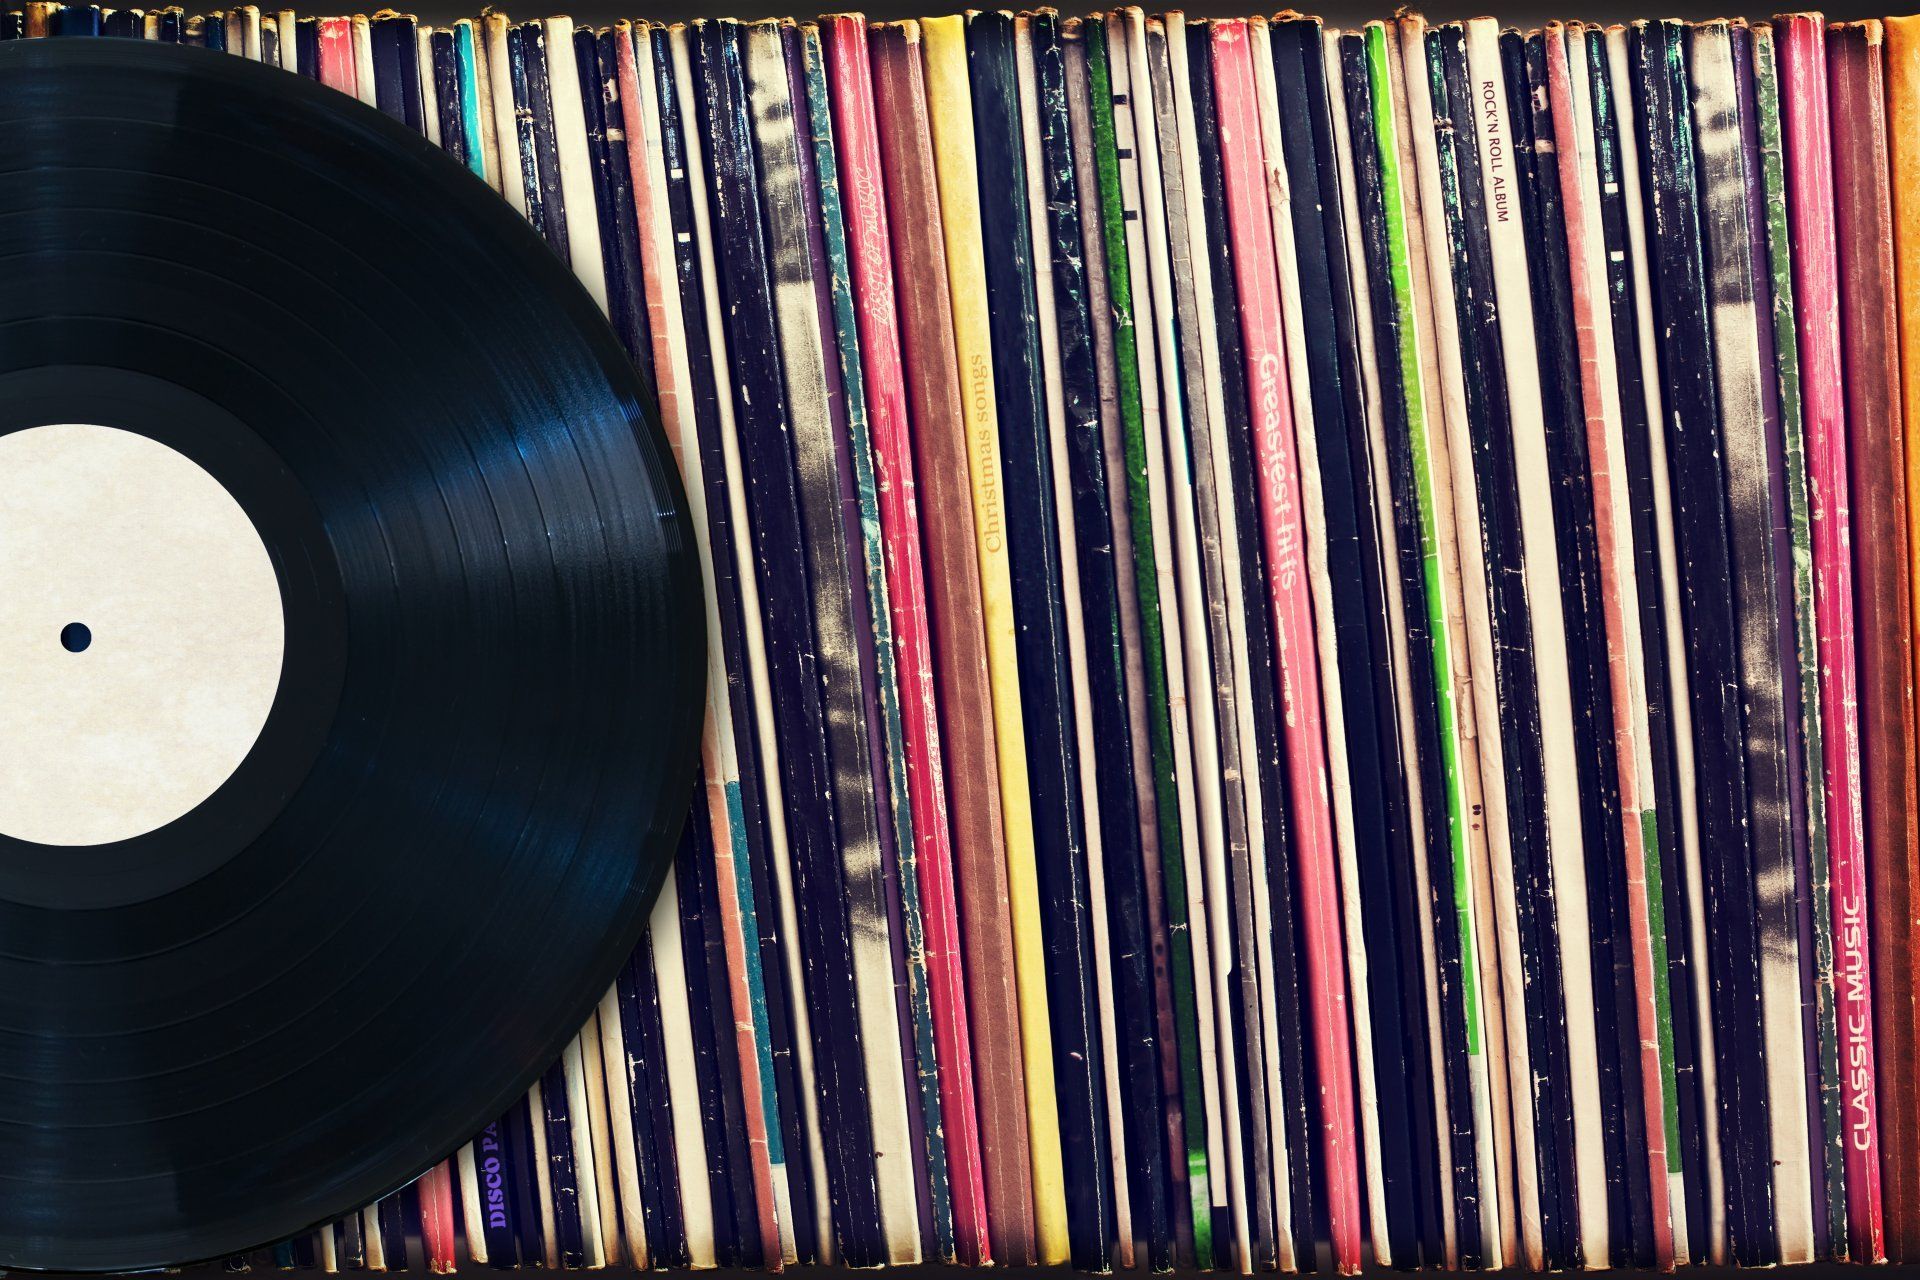 Vinyl Record Wallpaper. Record Wallpaper, Record Label Wallpaper and Rockabilly Record Wallpaper